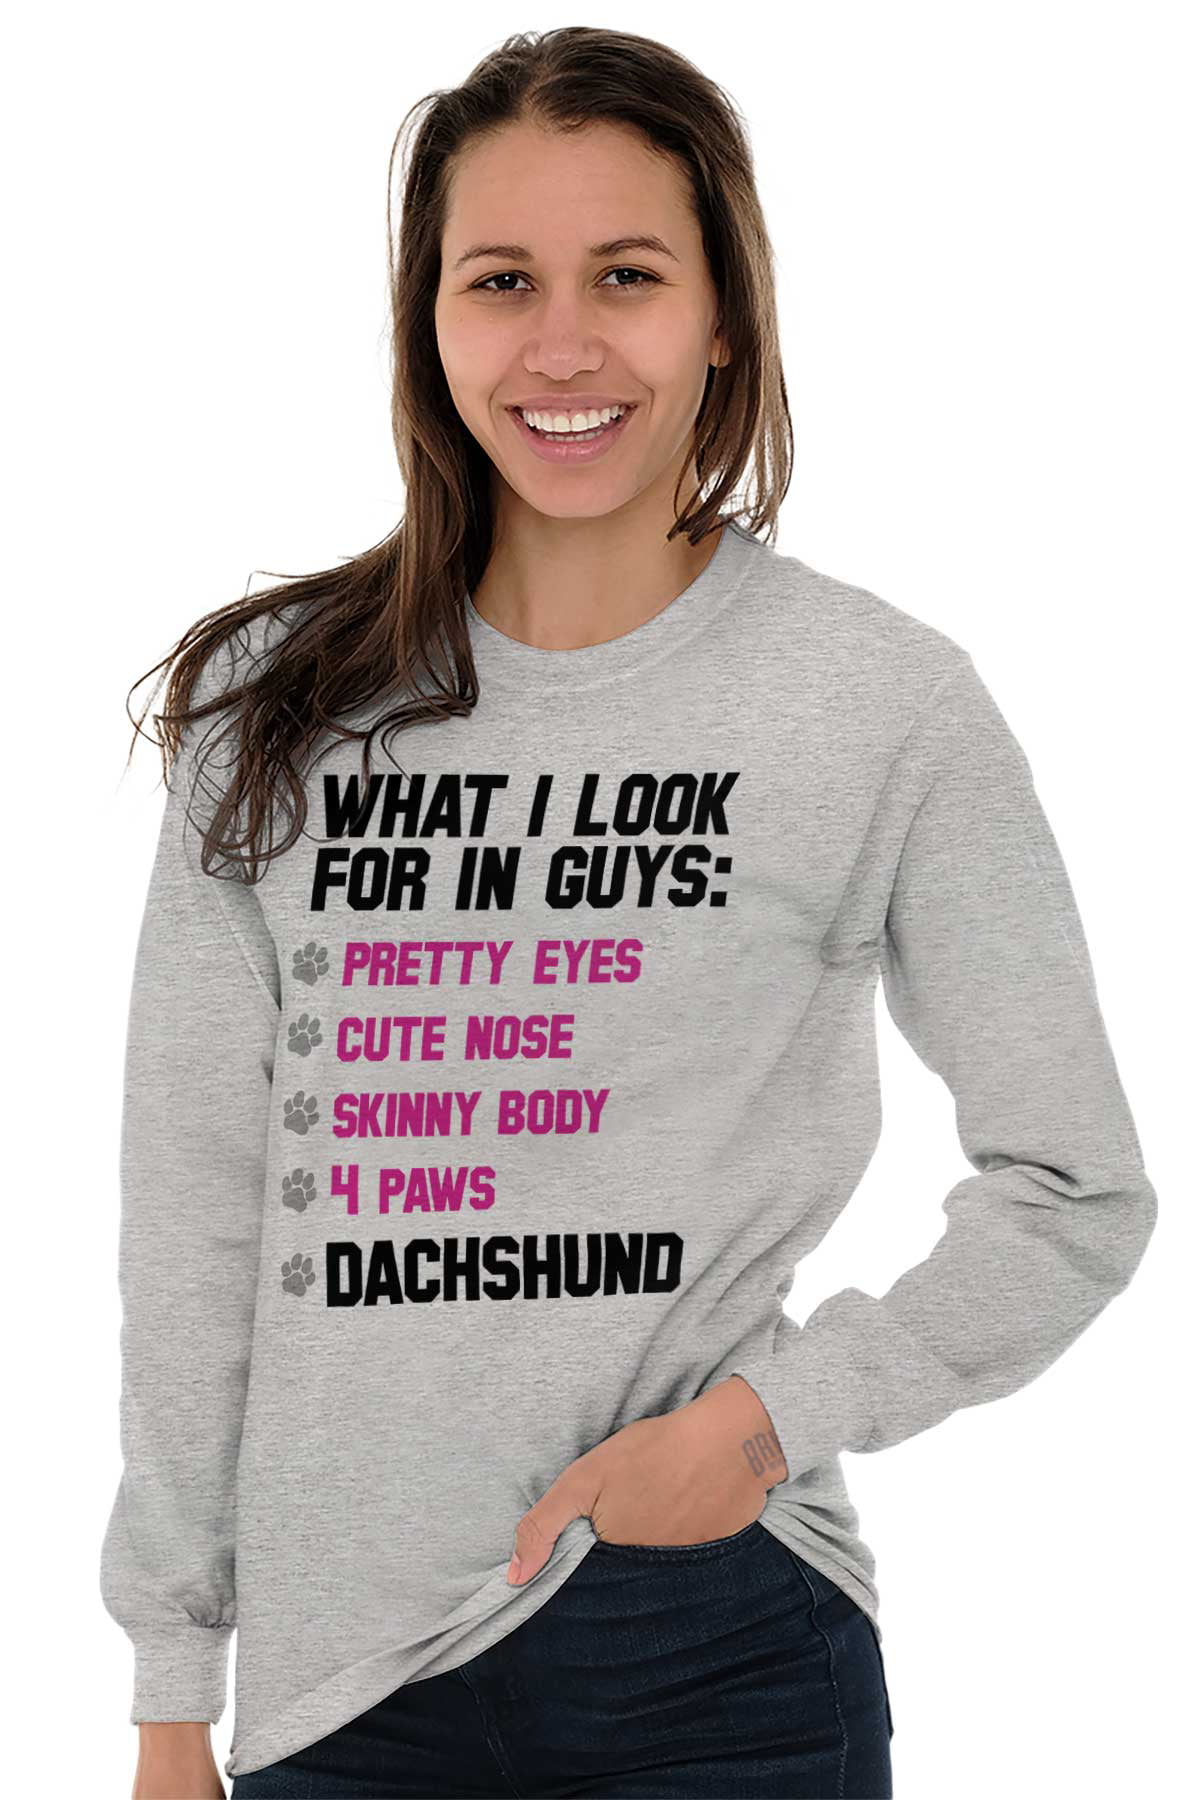 Sweatshirt,Funny T Shirt Lover Gift T-Shirt Girls Women Mom Dachshund Dog Sunflower Gift Funny Gift Tshirt Hoodie